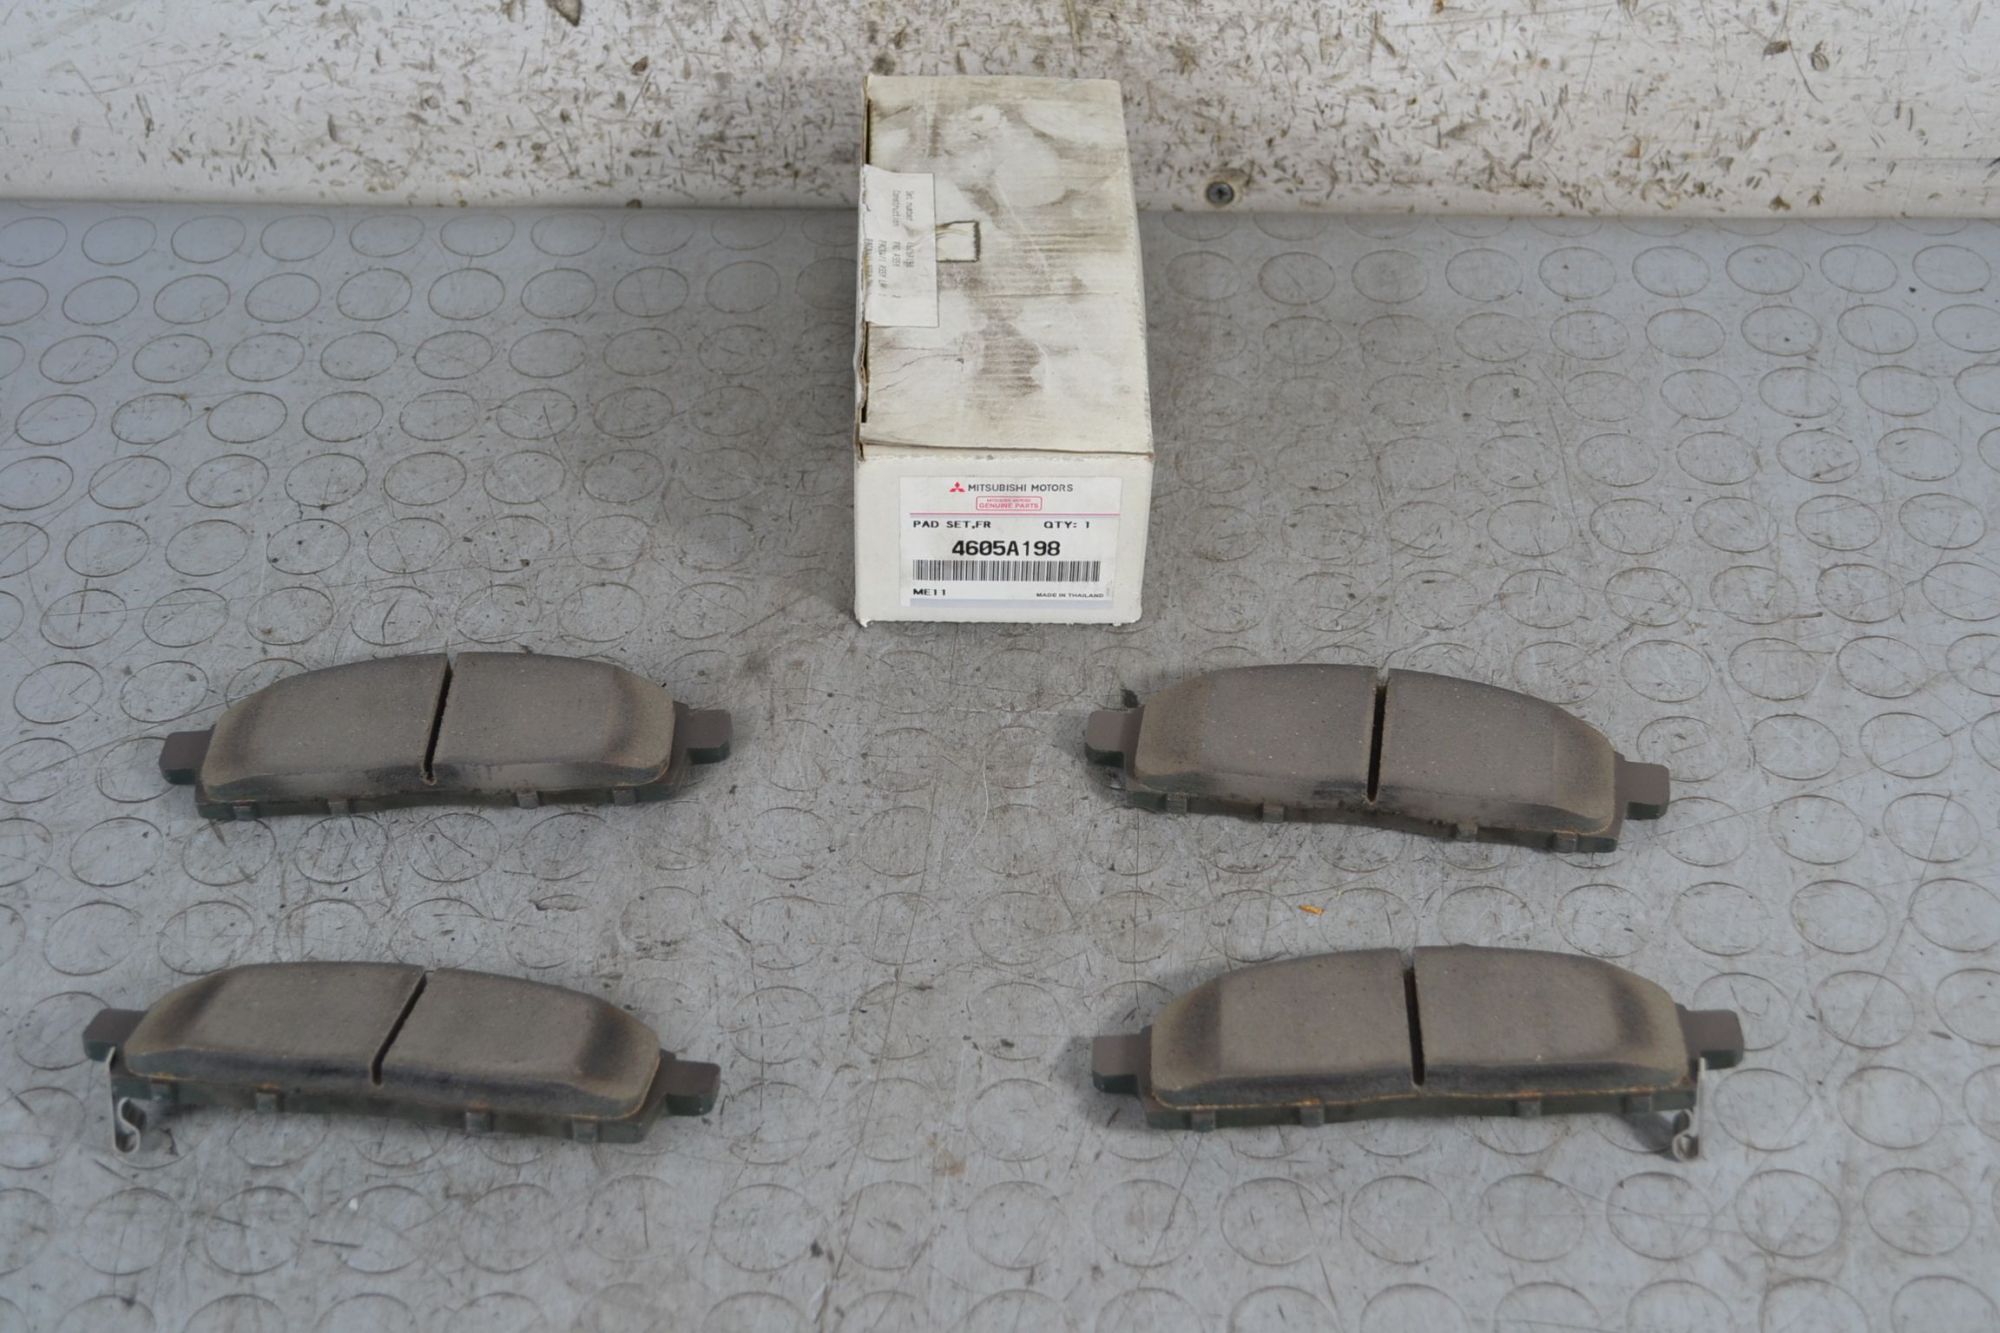 Set Pastiglie Freno Anteriori Mitsubishi L200 dal 2005 al 2015 Cod 4605a198  1696579418606